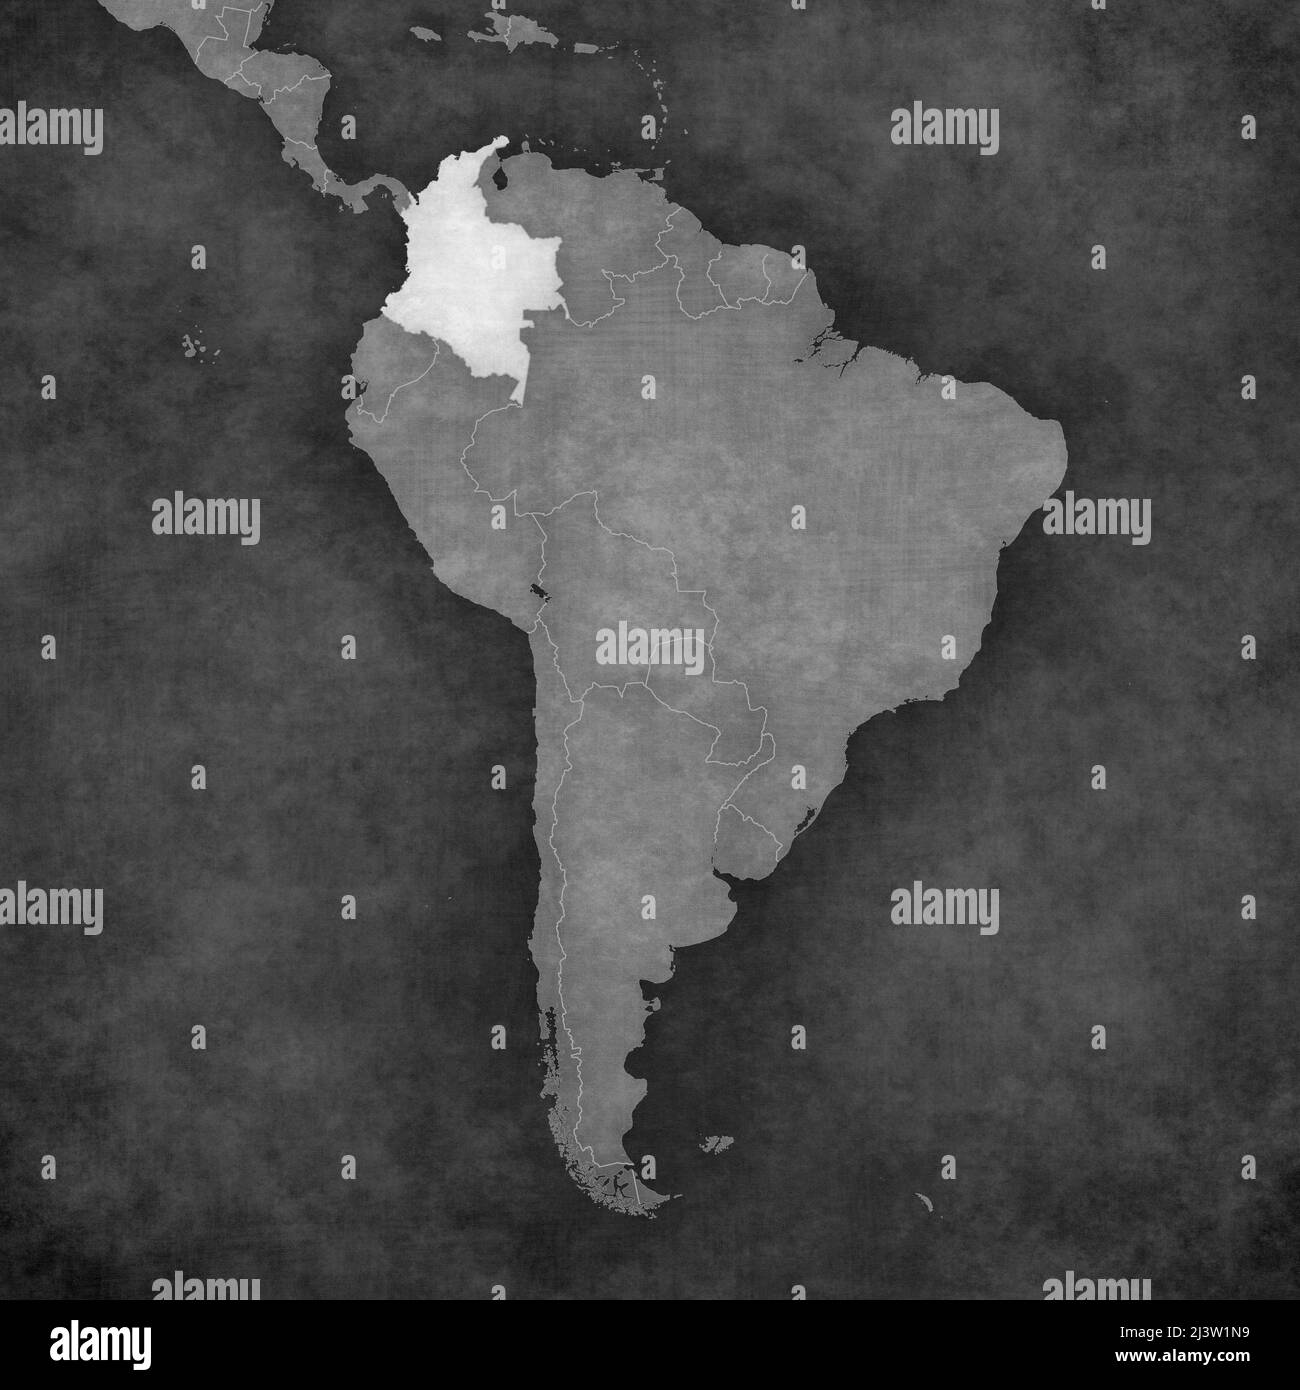 Colombie sur la carte de l'Amérique du Sud. La carte est de style vintage noir et blanc. La carte a un grunge doux et une atmosphère rétro de papier ancien. Banque D'Images